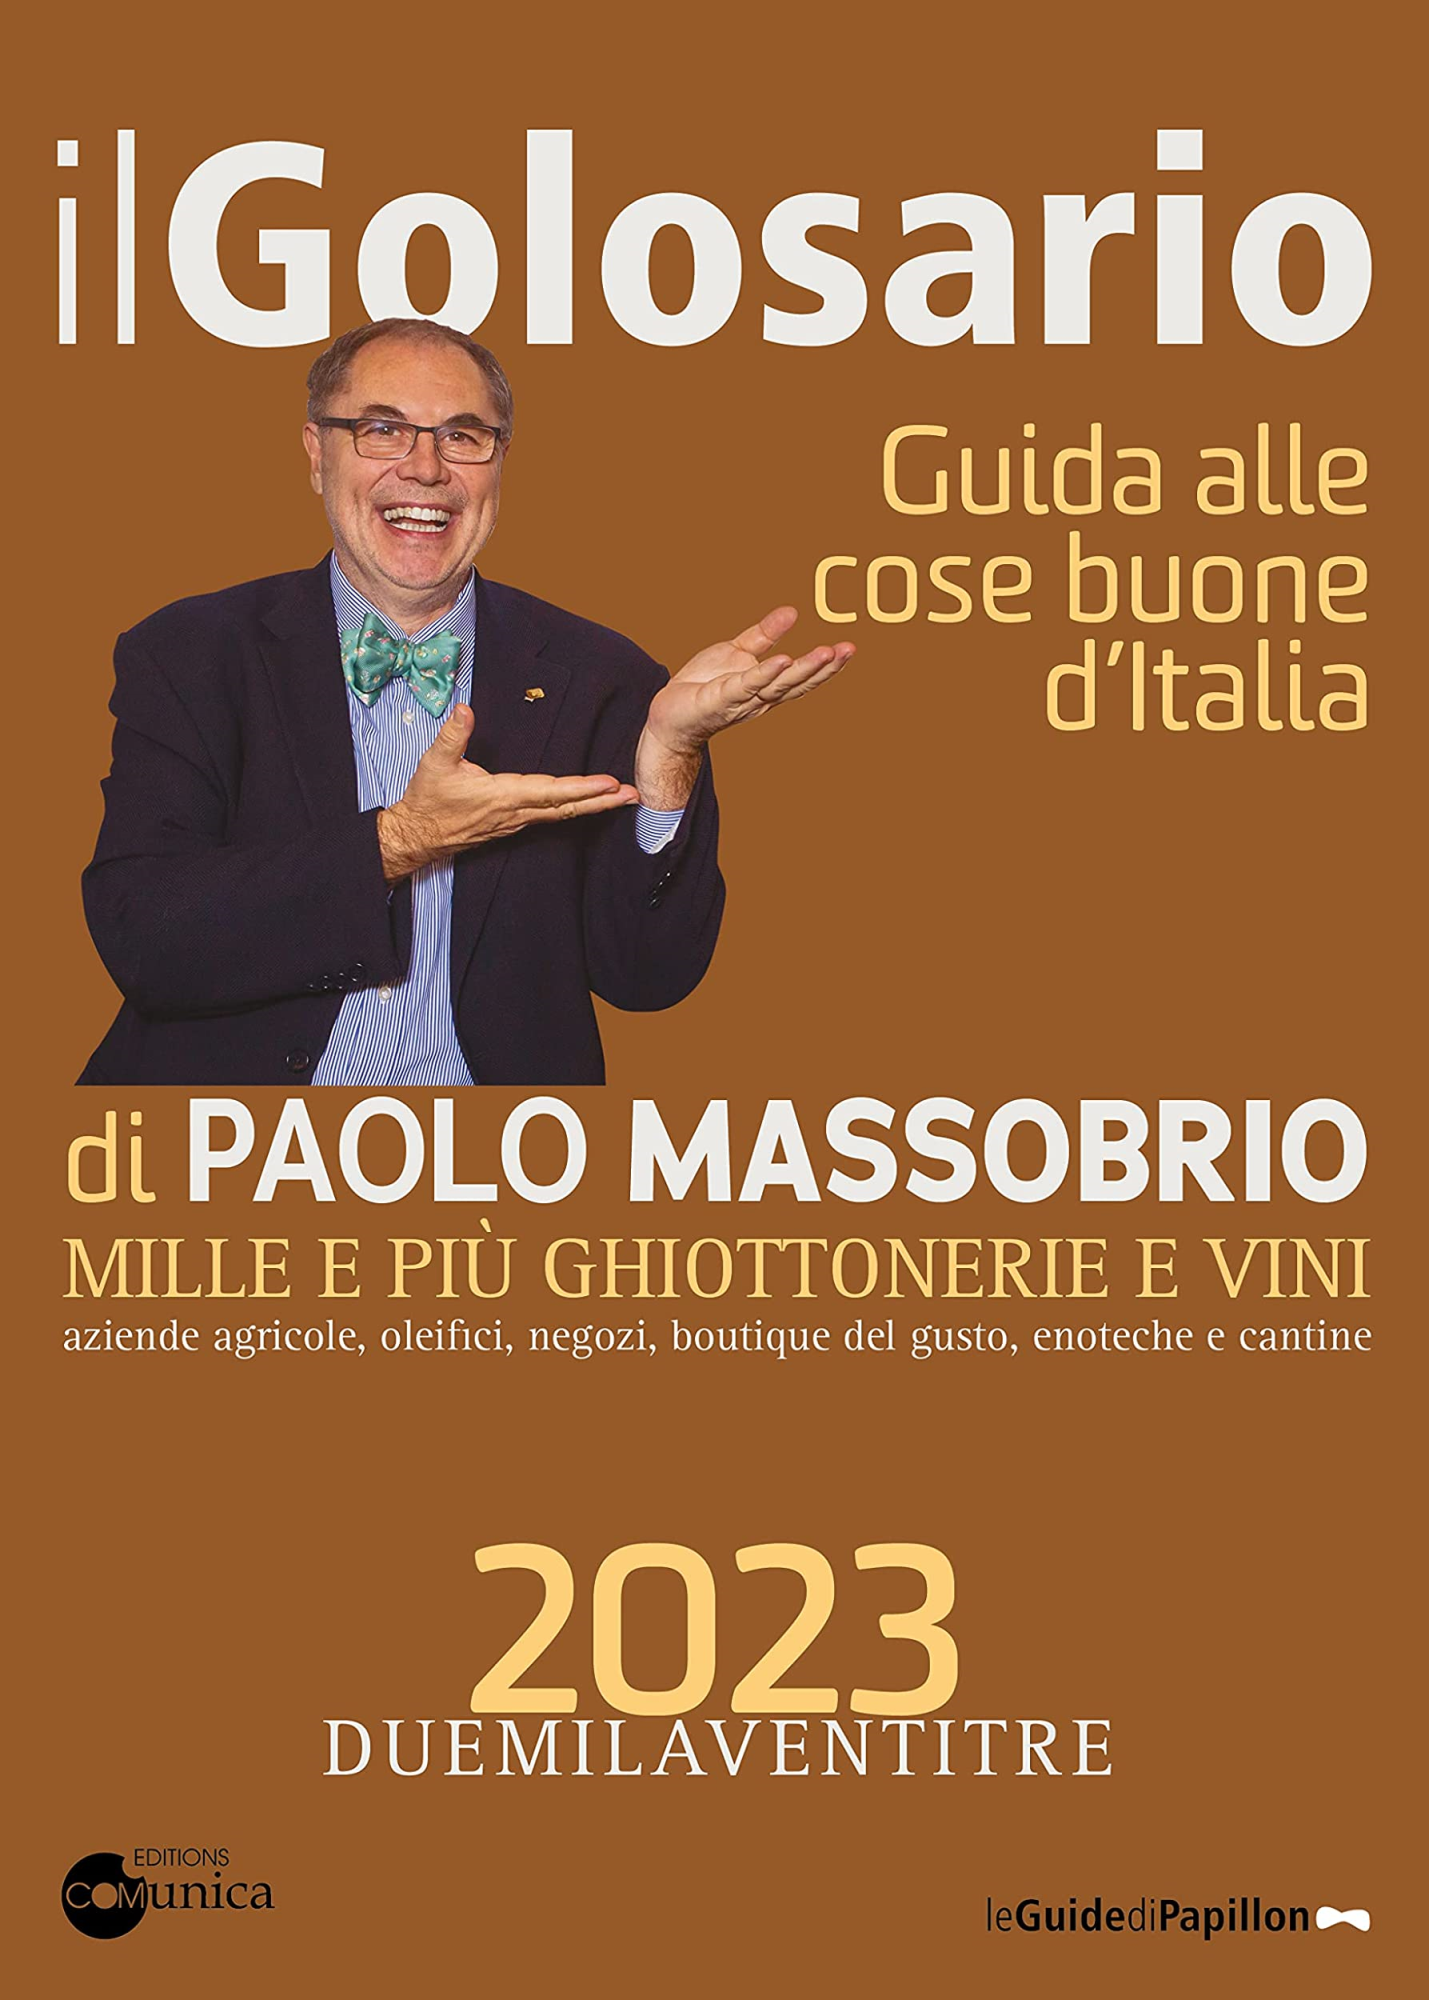 Libri Massobrio Paolo - Il Golosario 2023. Guida Alle Cose Buone D'italia NUOVO SIGILLATO, EDIZIONE DEL 29/11/2022 SUBITO DISPONIBILE